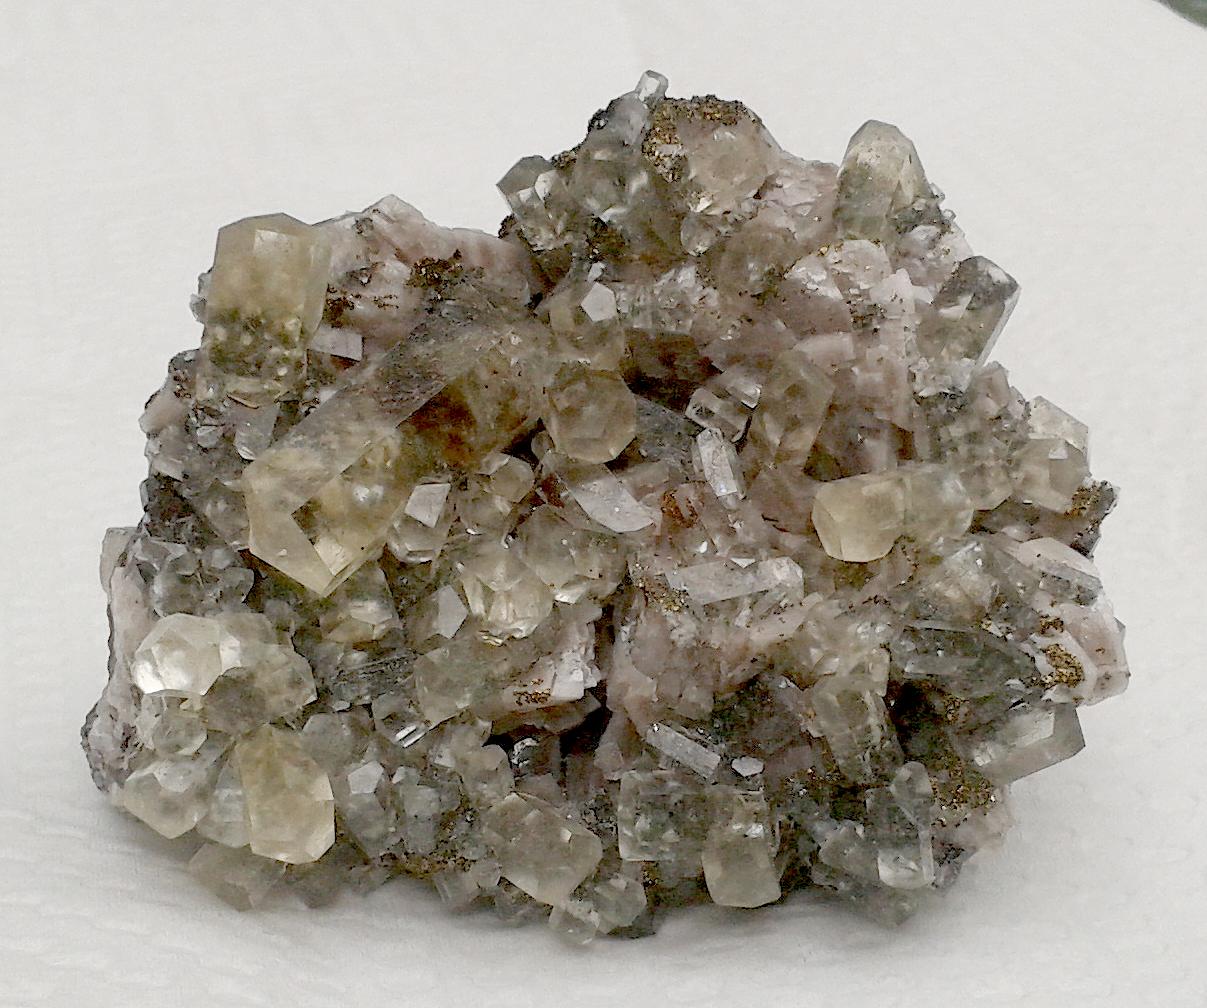 Fine Calcite, Grant Quarry, Grelly, Ontario, Canada - 004